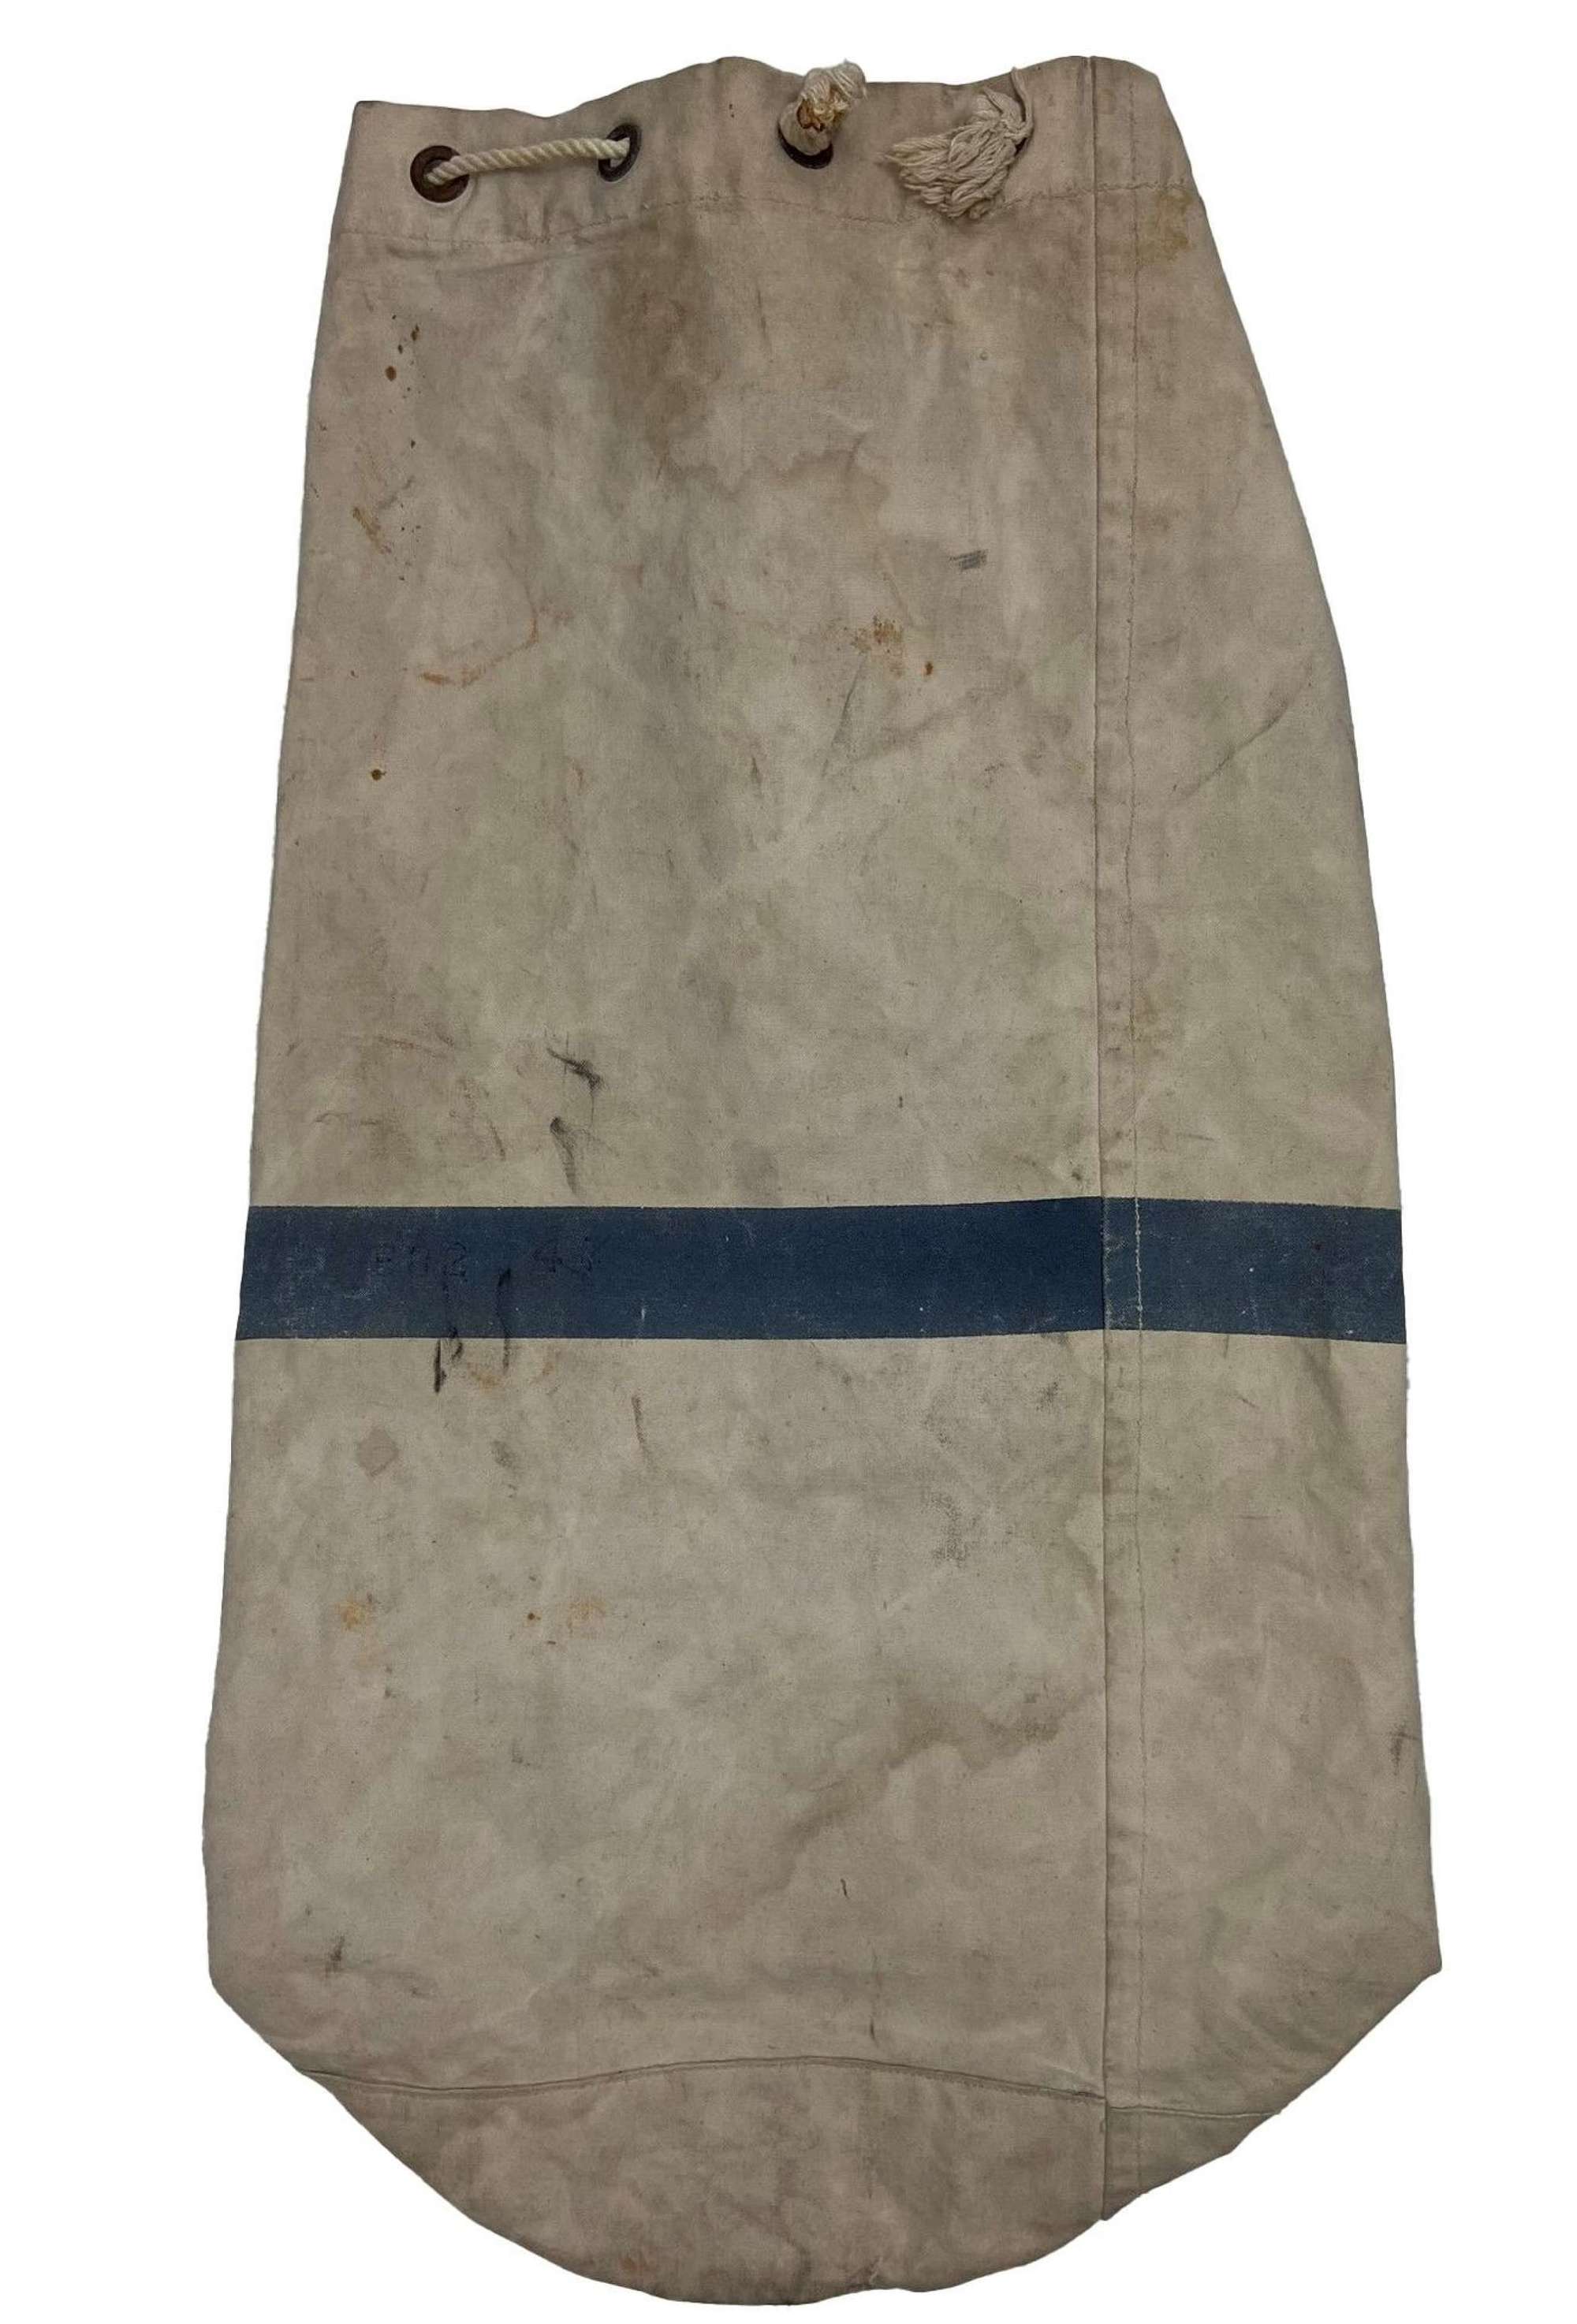 Original 1956 Dated RAF Kit bag